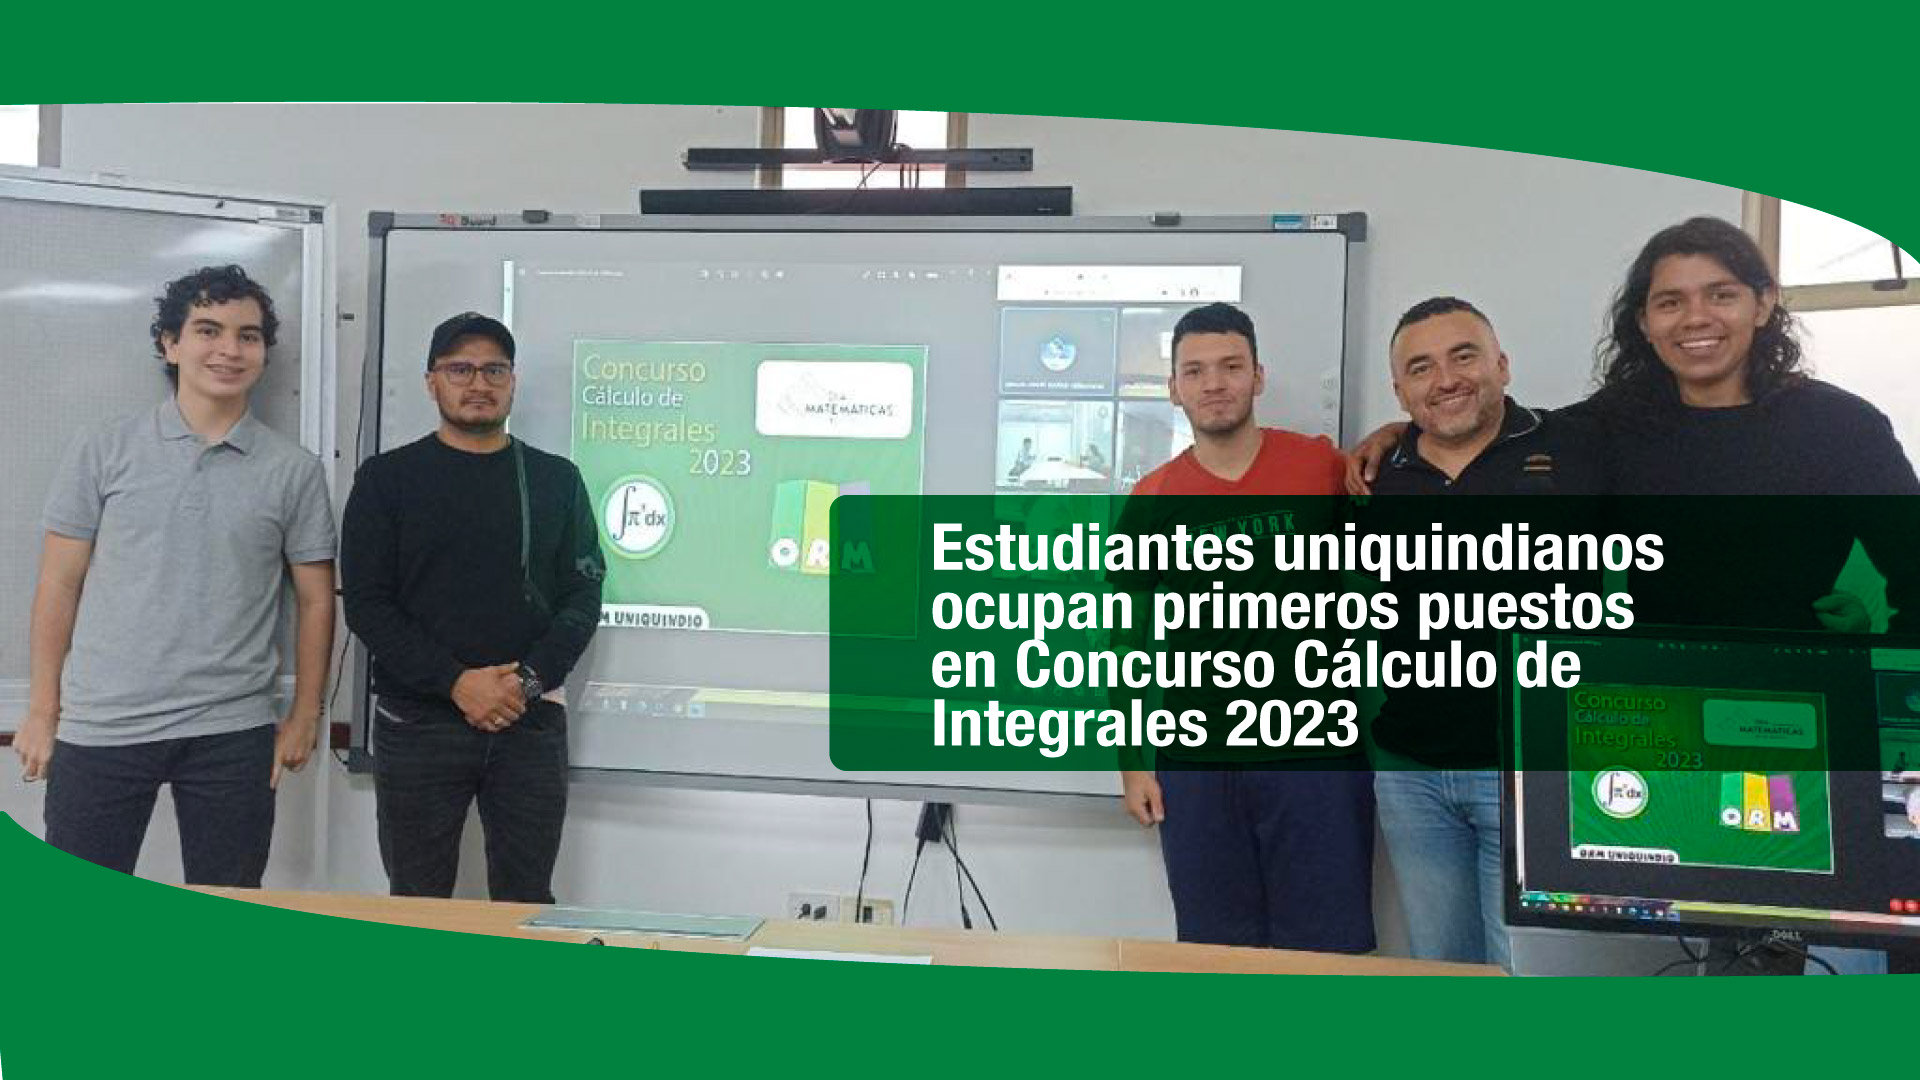 Estudiantes uniquindianos ocupan primeros puestos en Concurso Cálculo de Integrales 2023